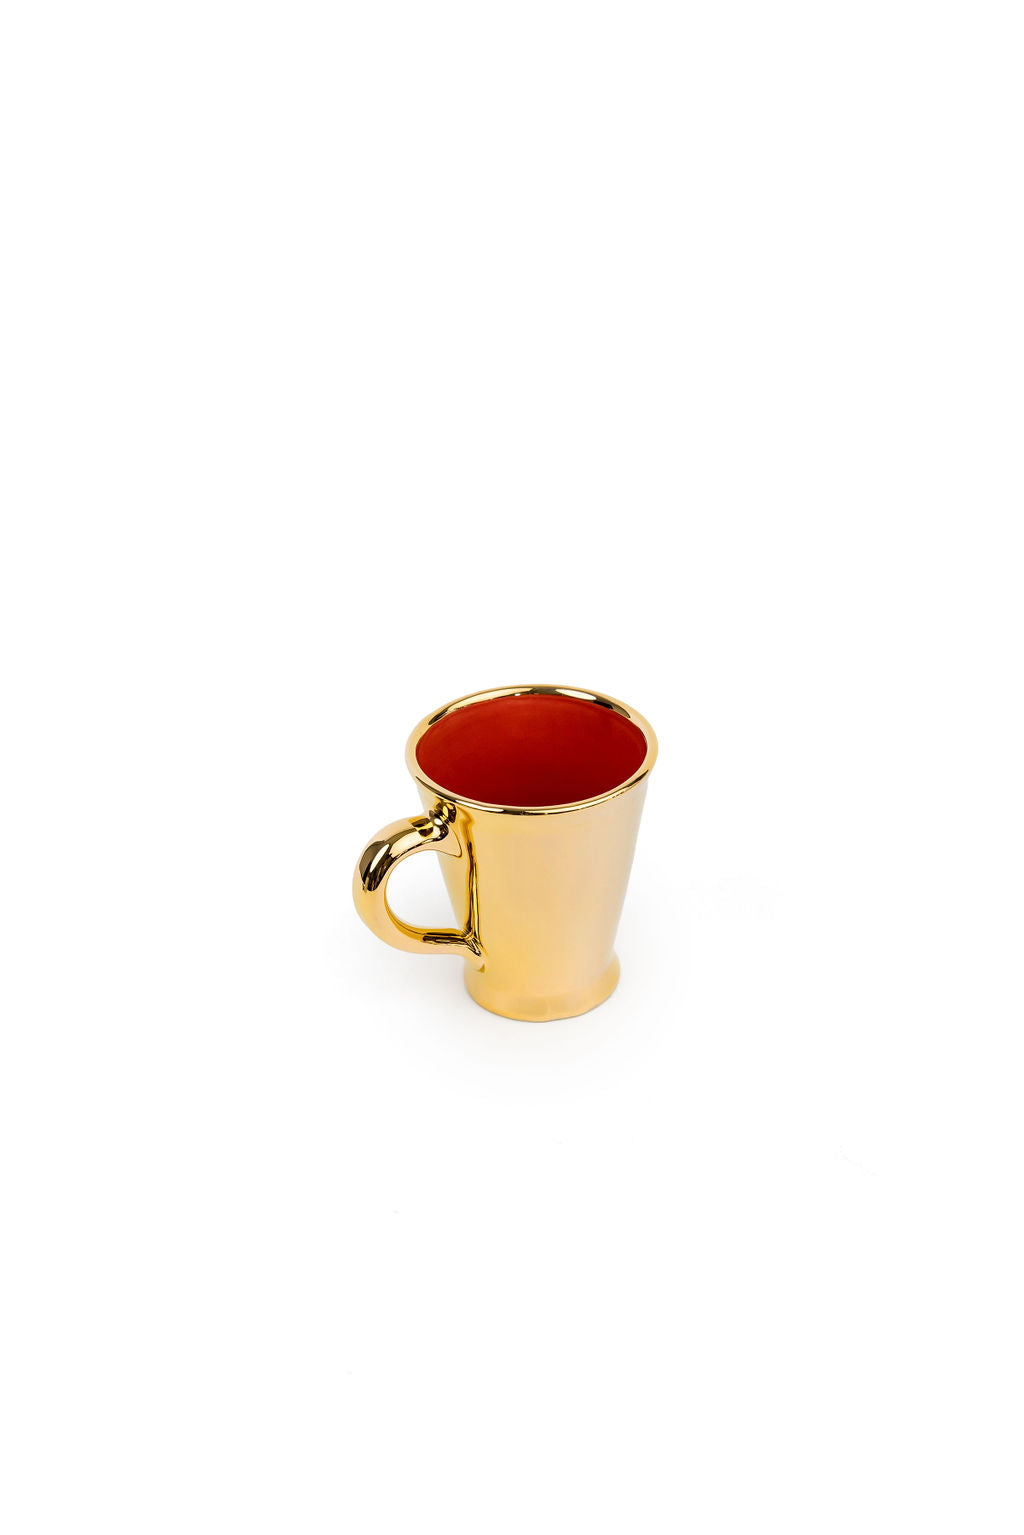 Gold Handmade Ceramic Mug